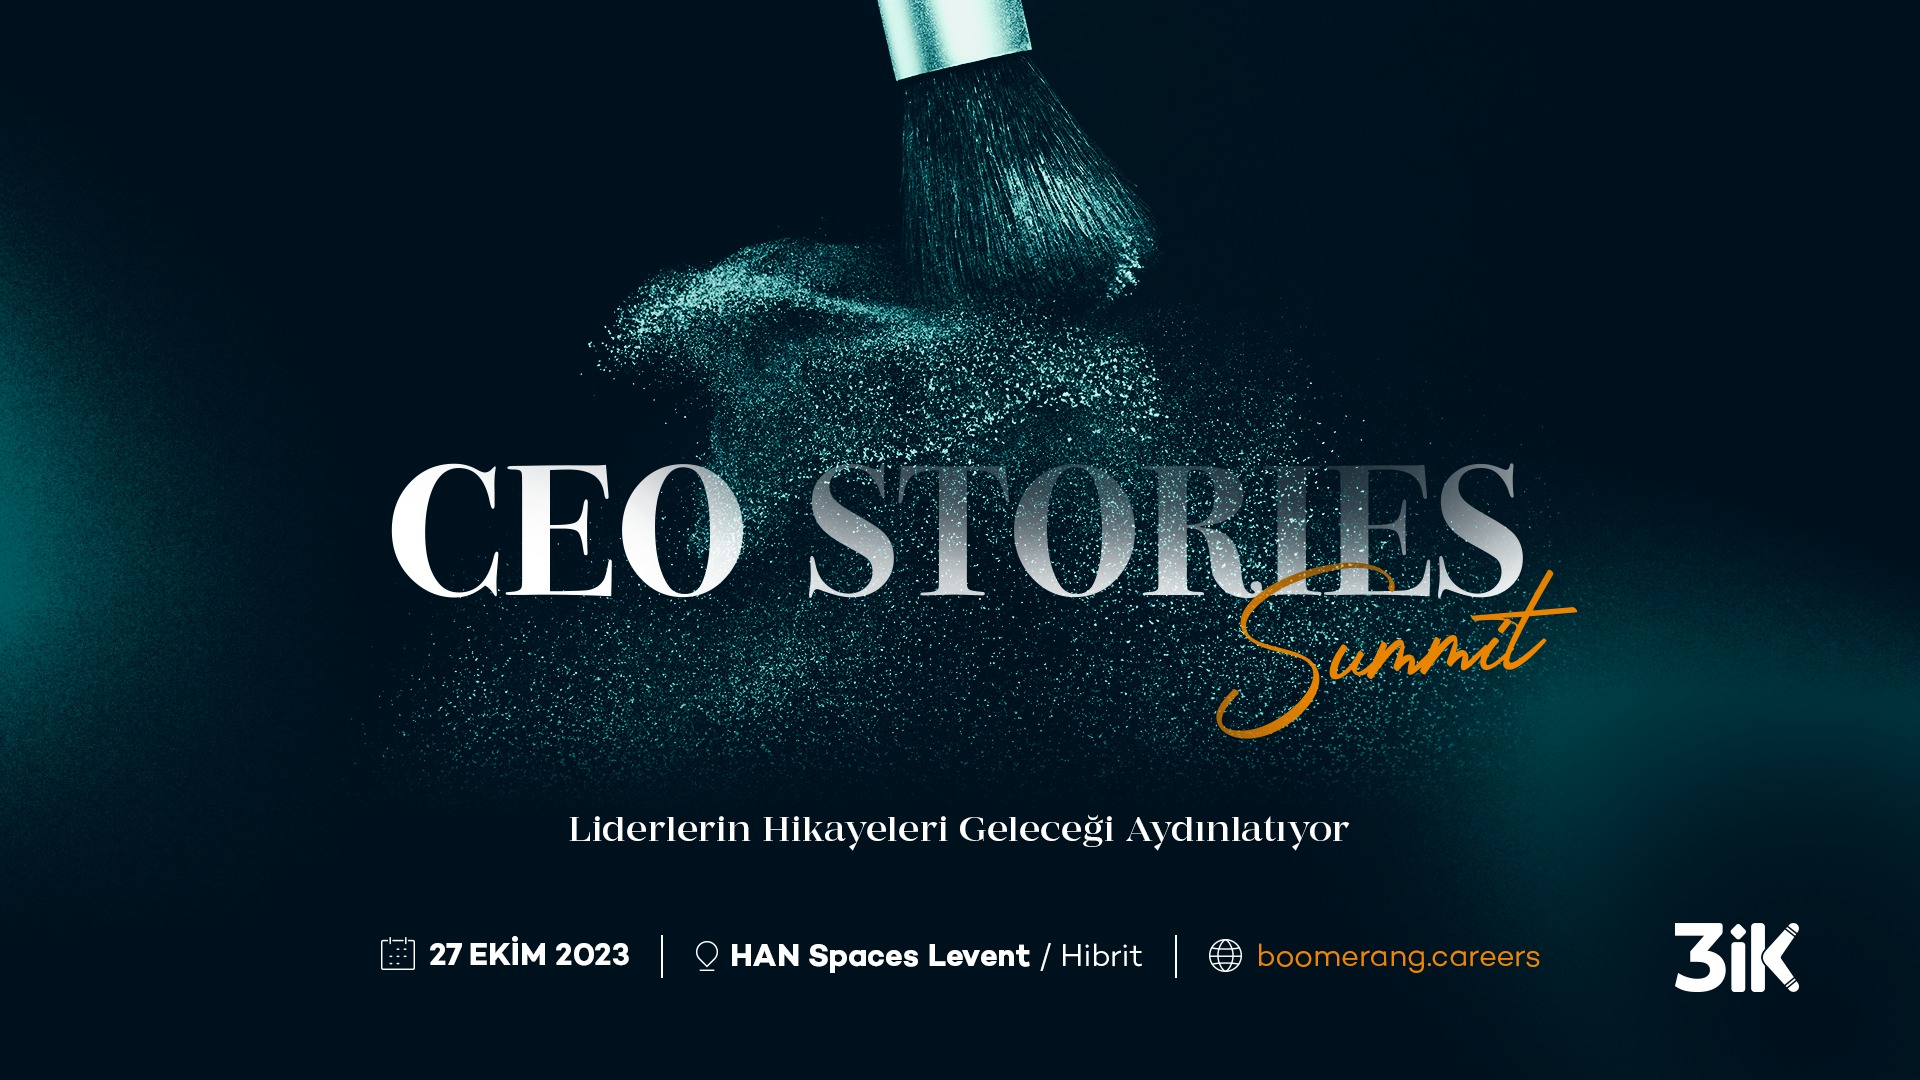 CEO Stories Summit